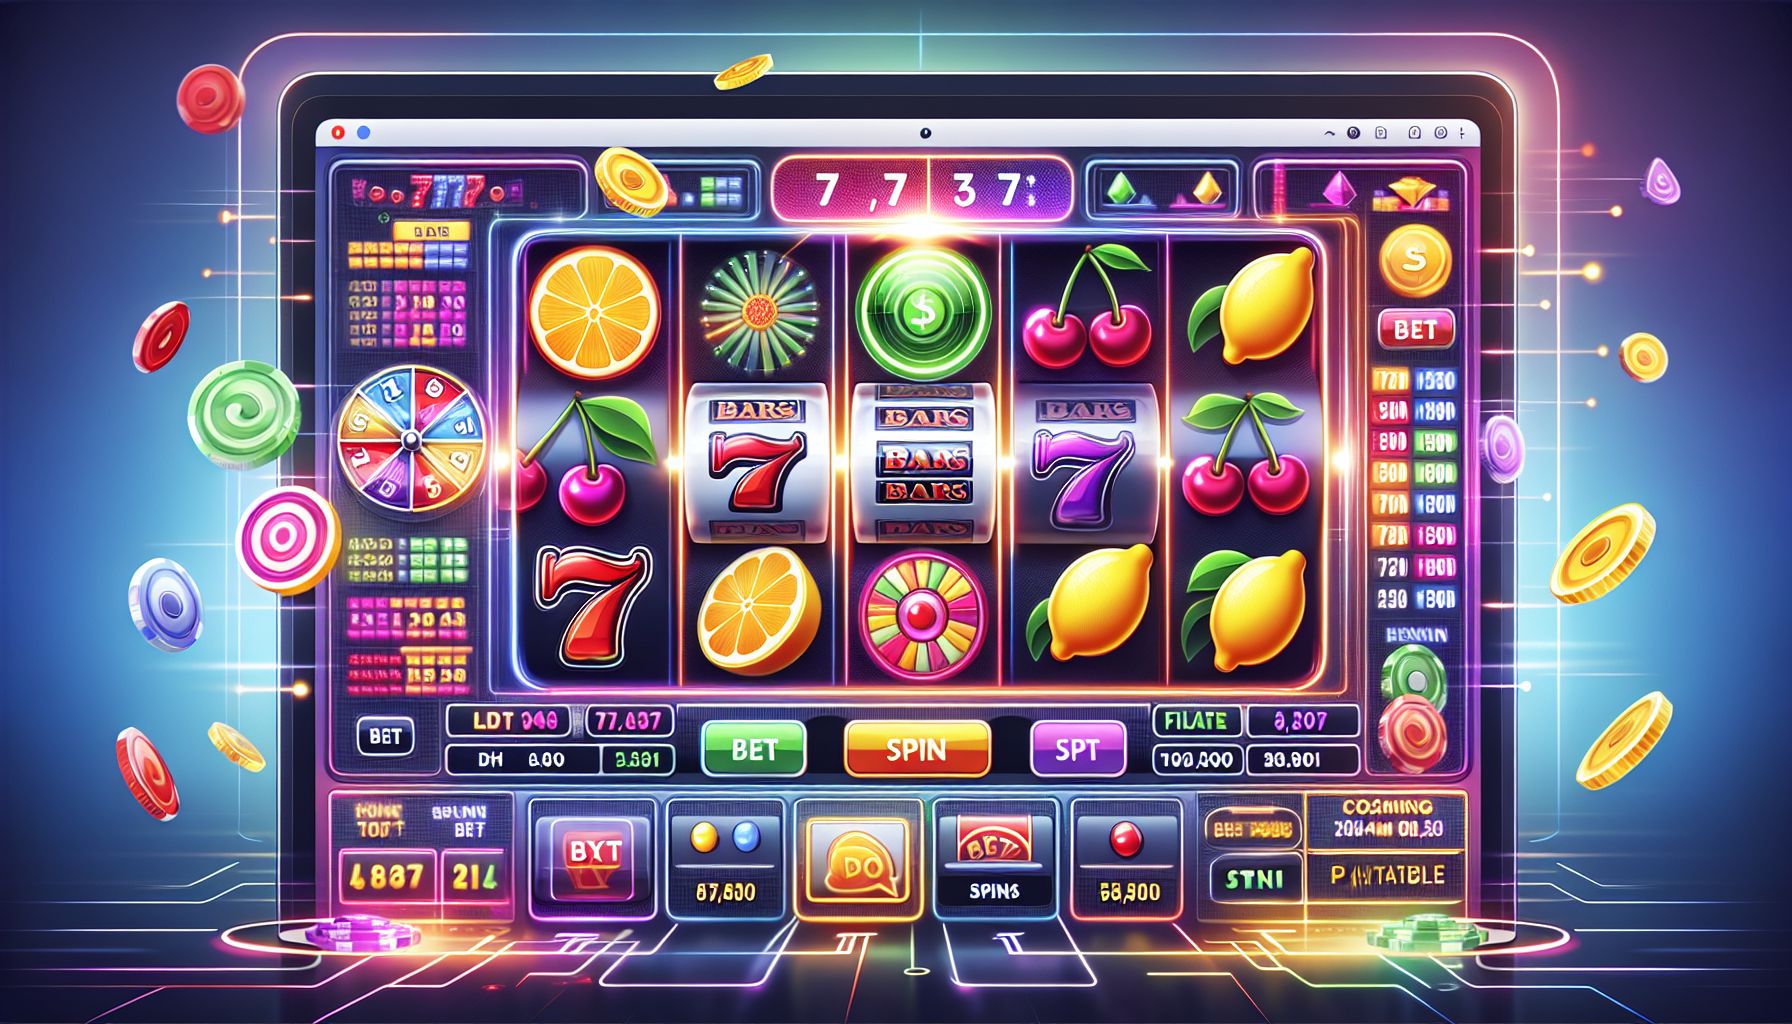 Mimpi303 dan Kangtau89: Pilihan Top untuk Game Slot Online